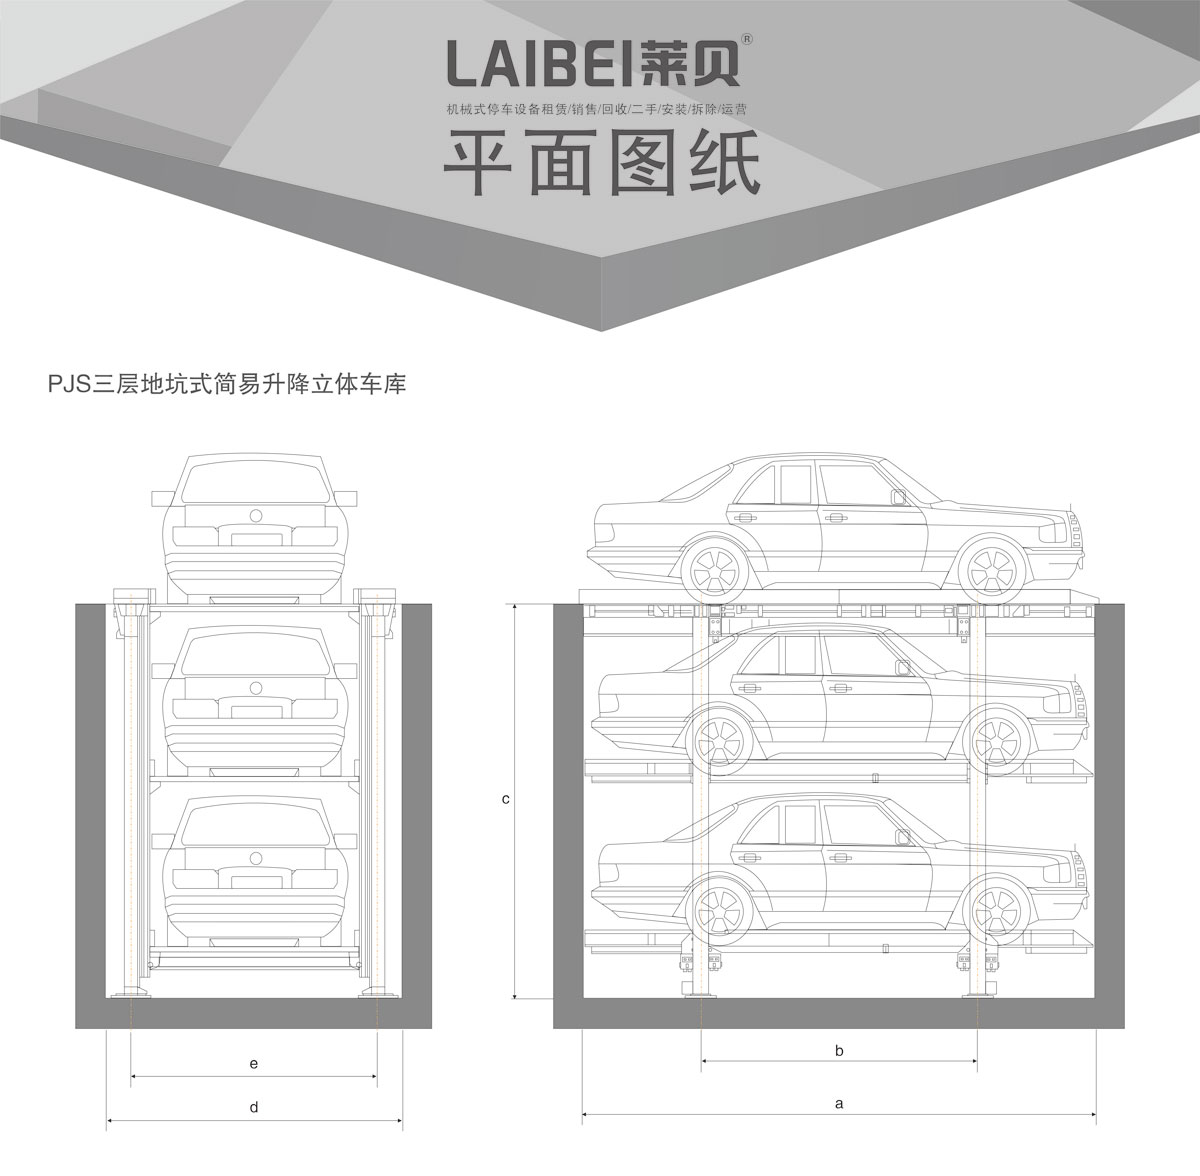 贵阳莱贝PJS3-D2三层地坑简易升降机械式立体停车库平面图纸.jpg